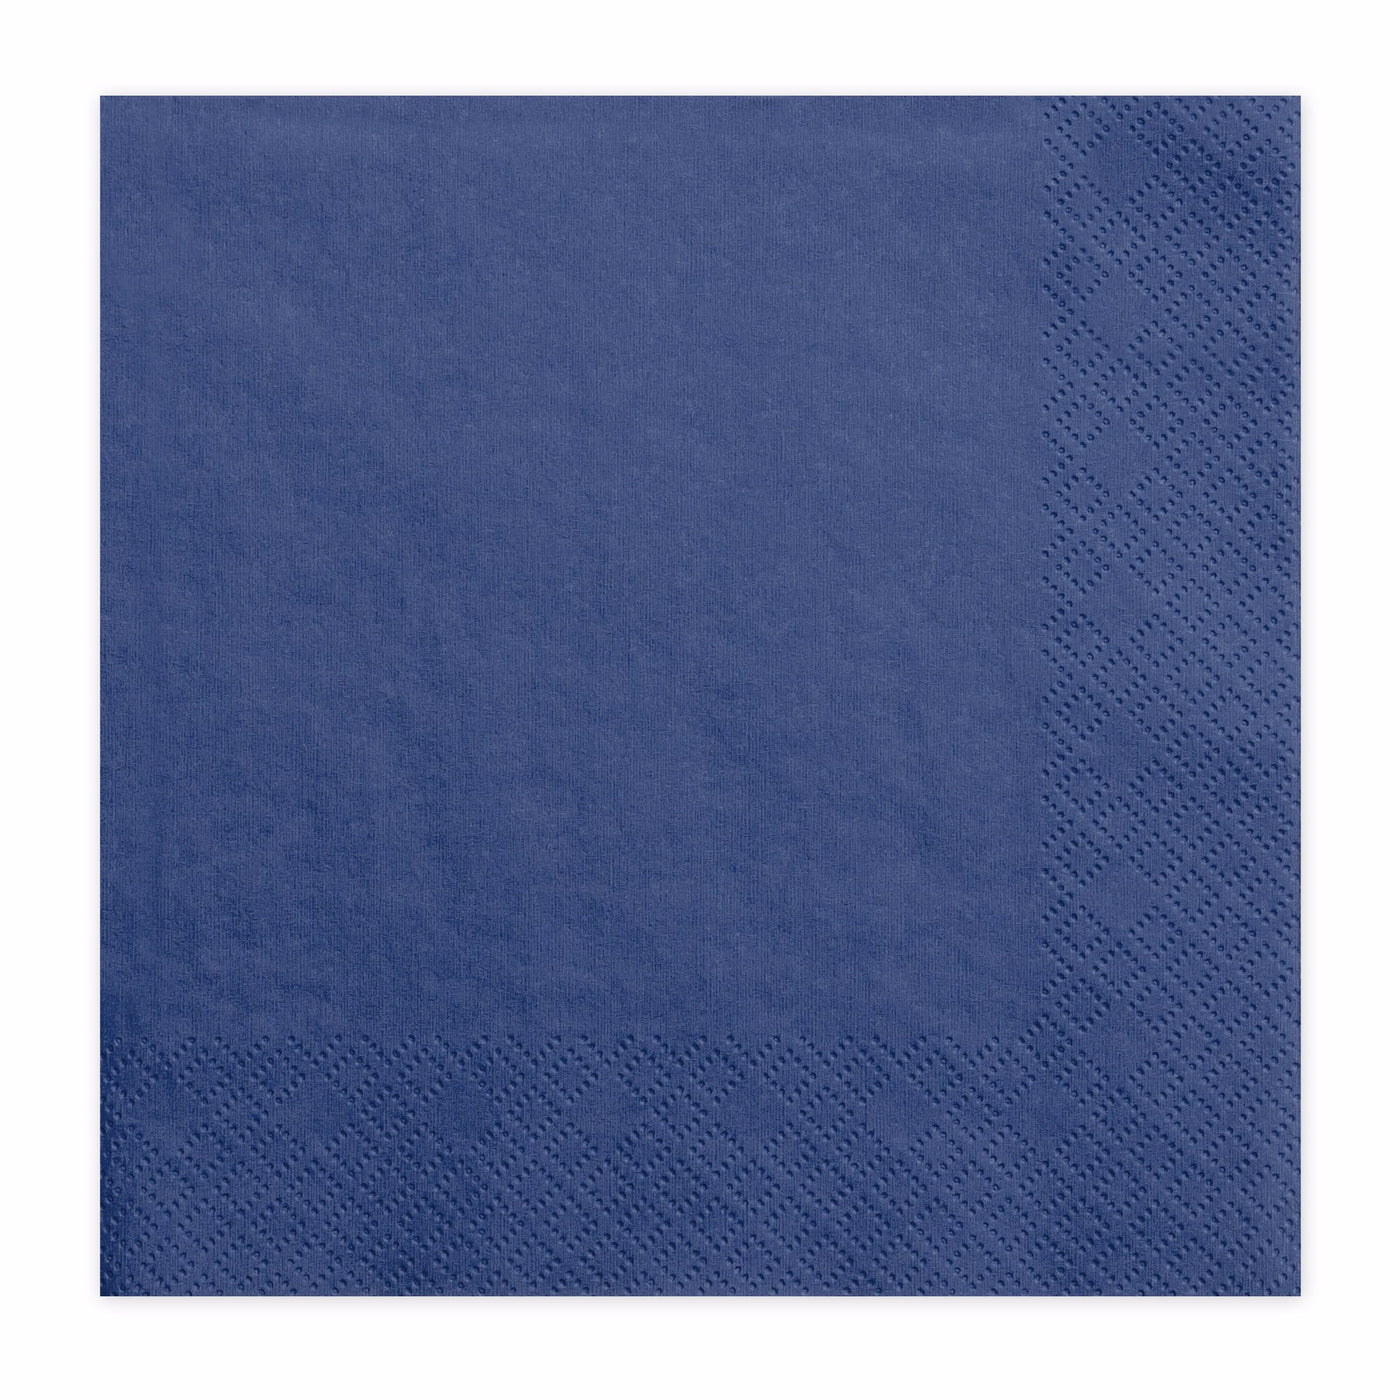 Navy blue napkin / 20 pcs.